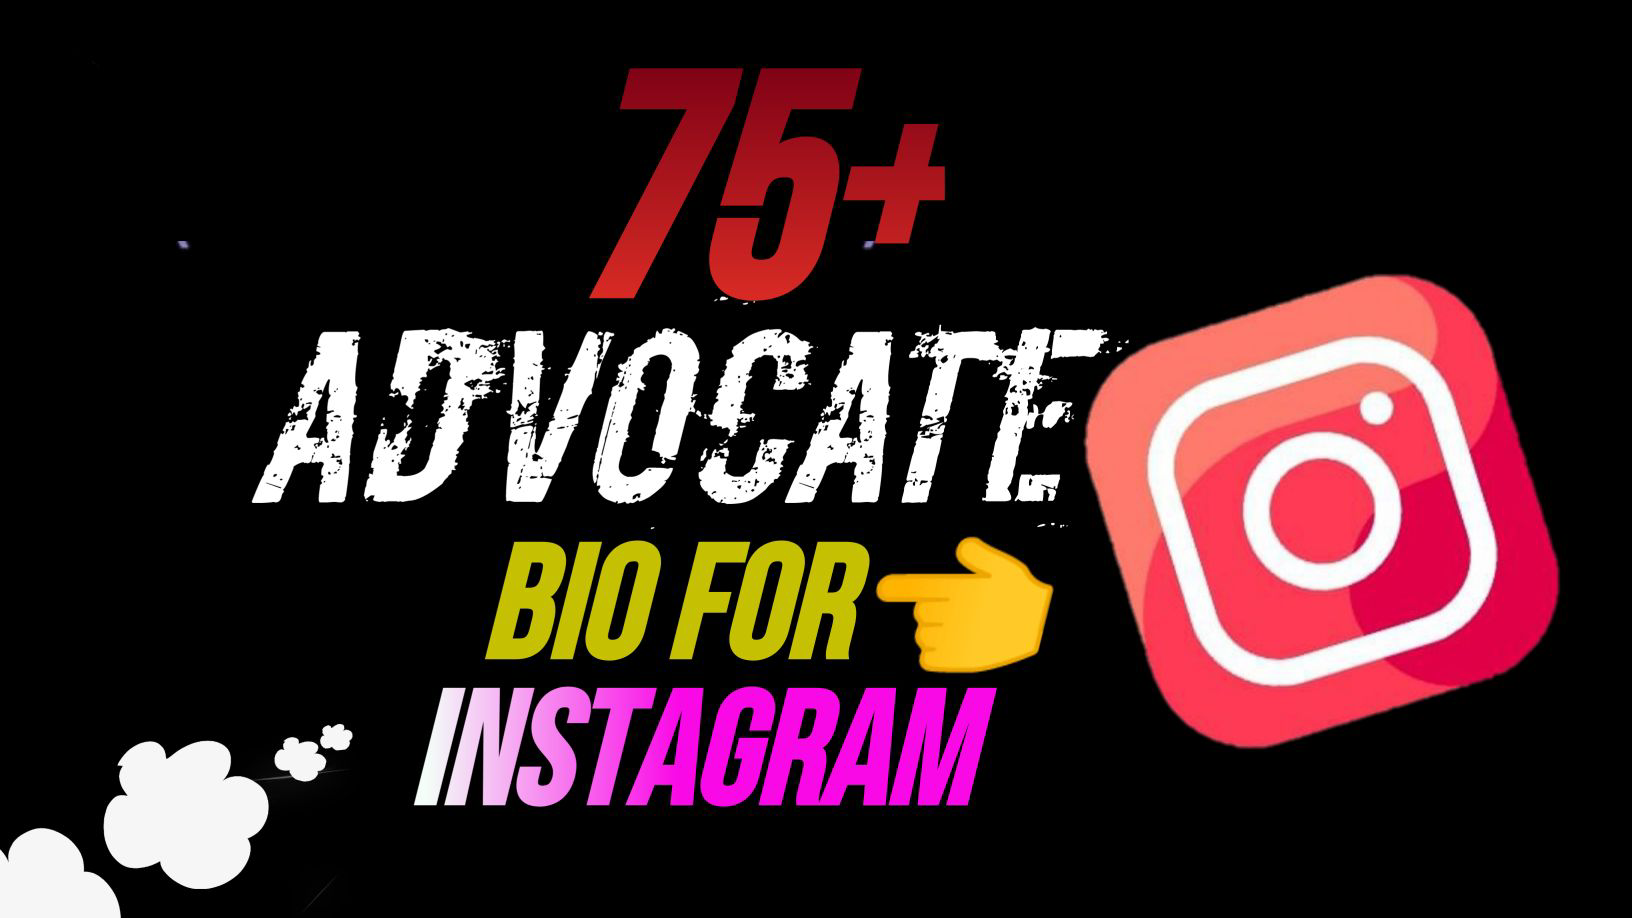 75+ Charity Advocate Bio For Instagram Copy - NewBioIdea